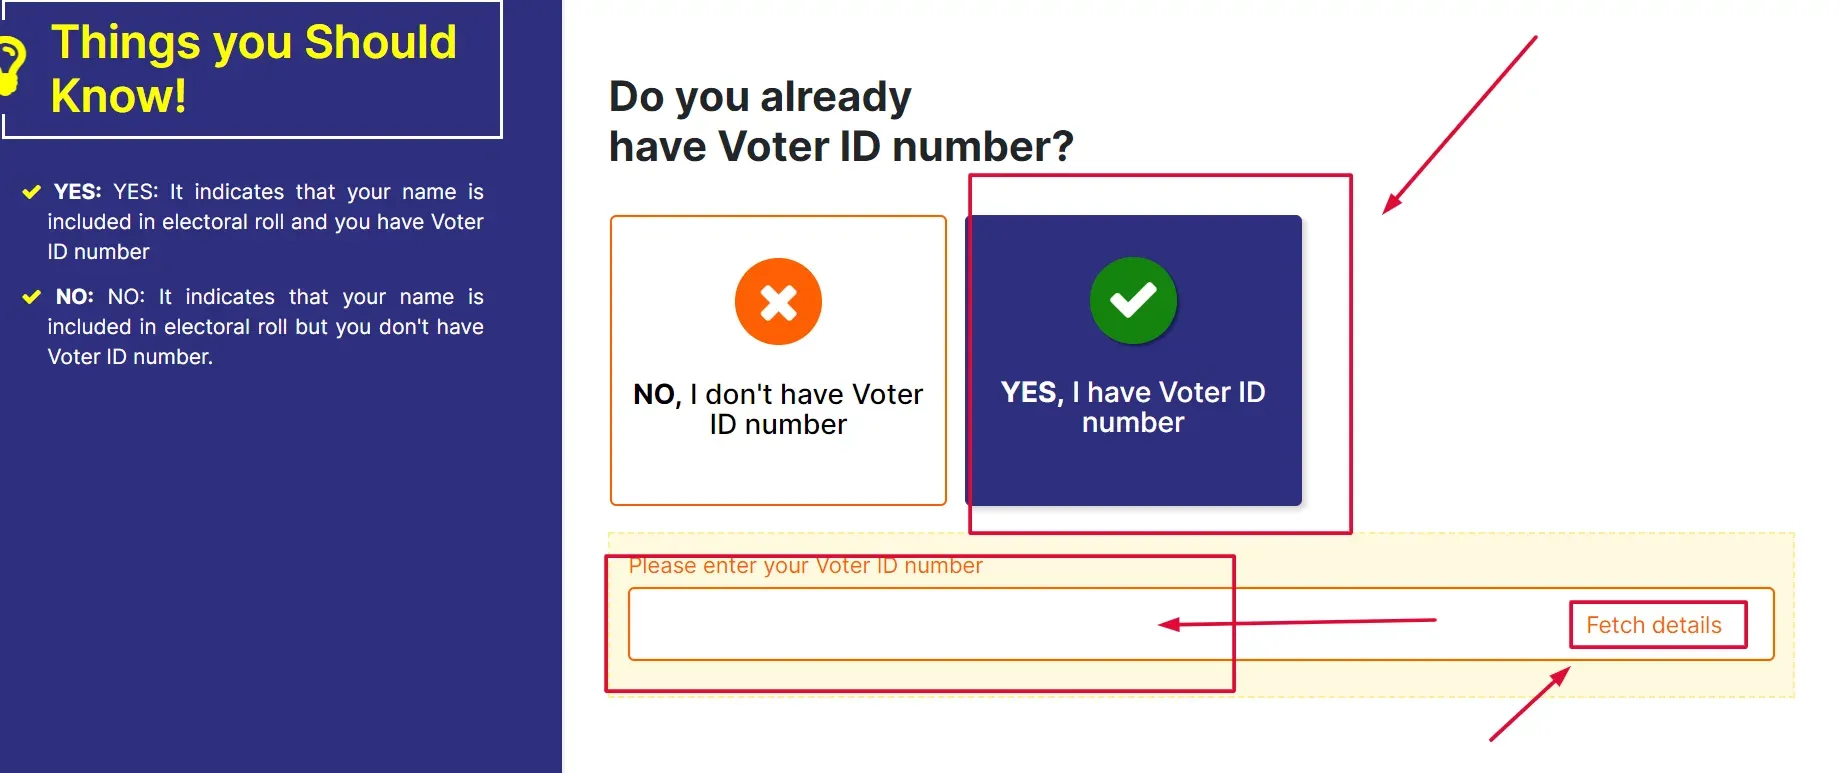 मतदाता पहचान पत्र ऑनलाइन मतदाता पोर्टल पर आवेदन करें | Voter ID card online apply at voter portal